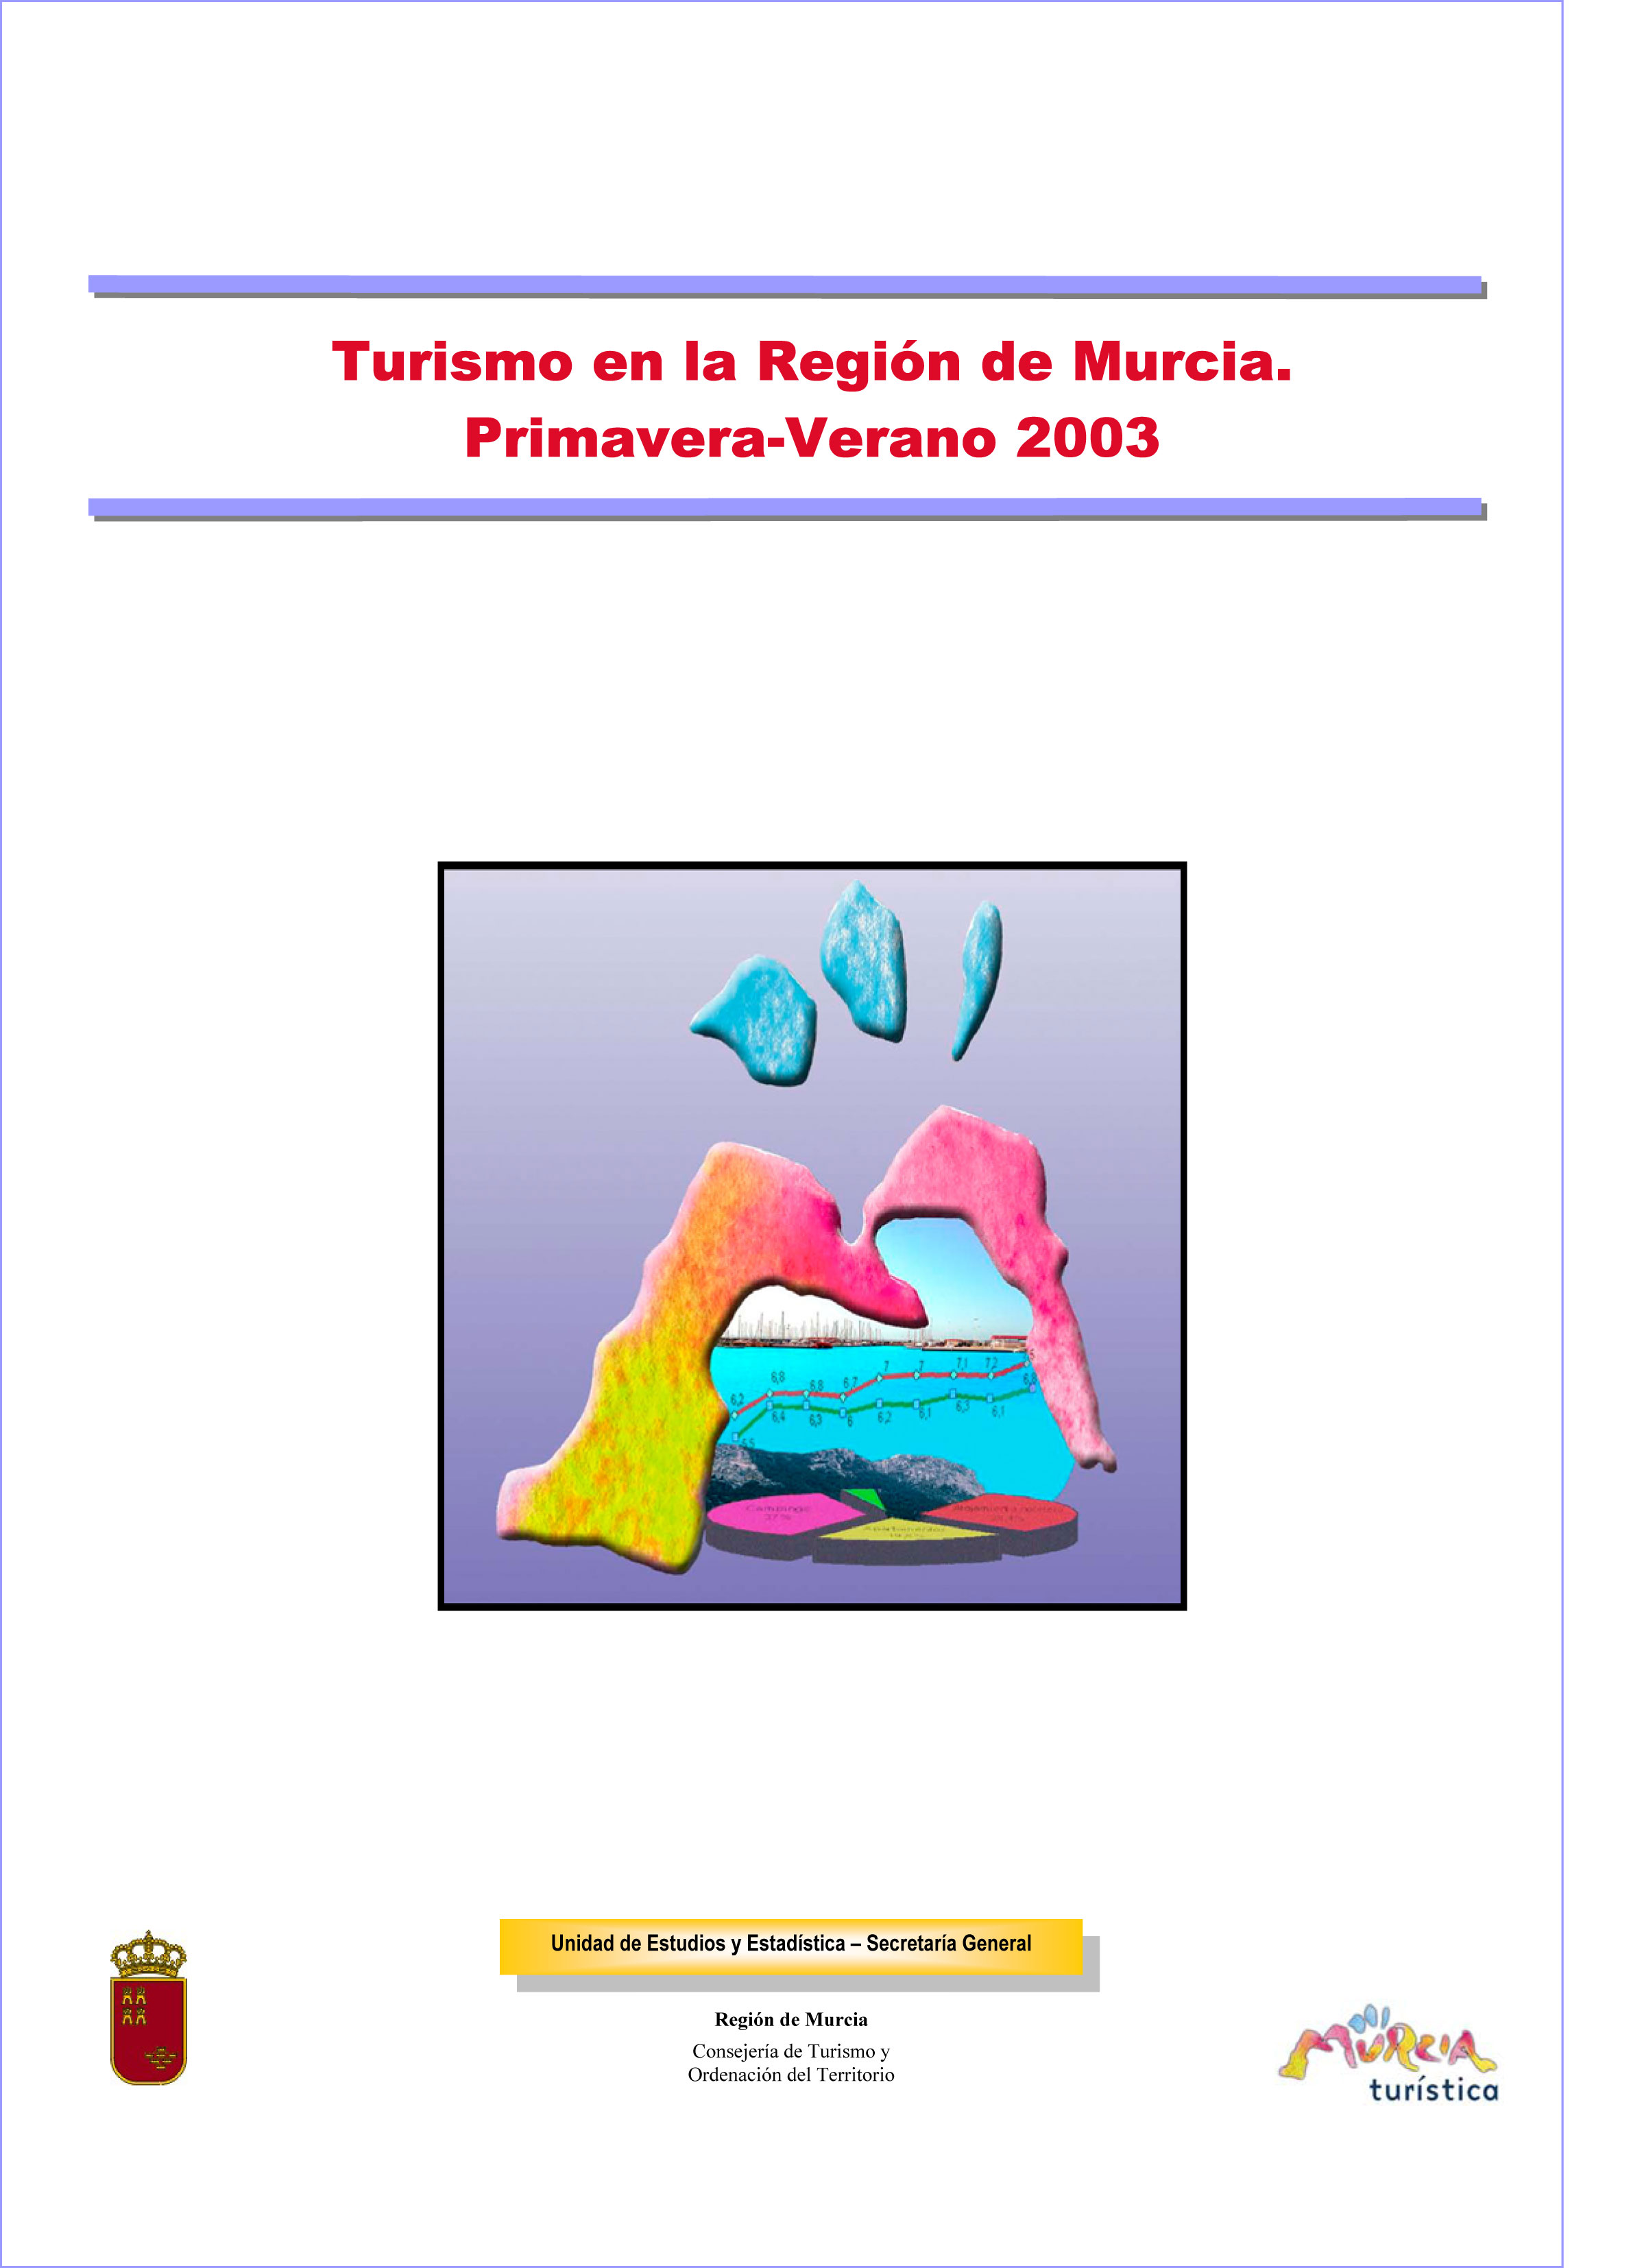 Portada de "Turismo en la Región de Murcia Primavera-Verano 2003"